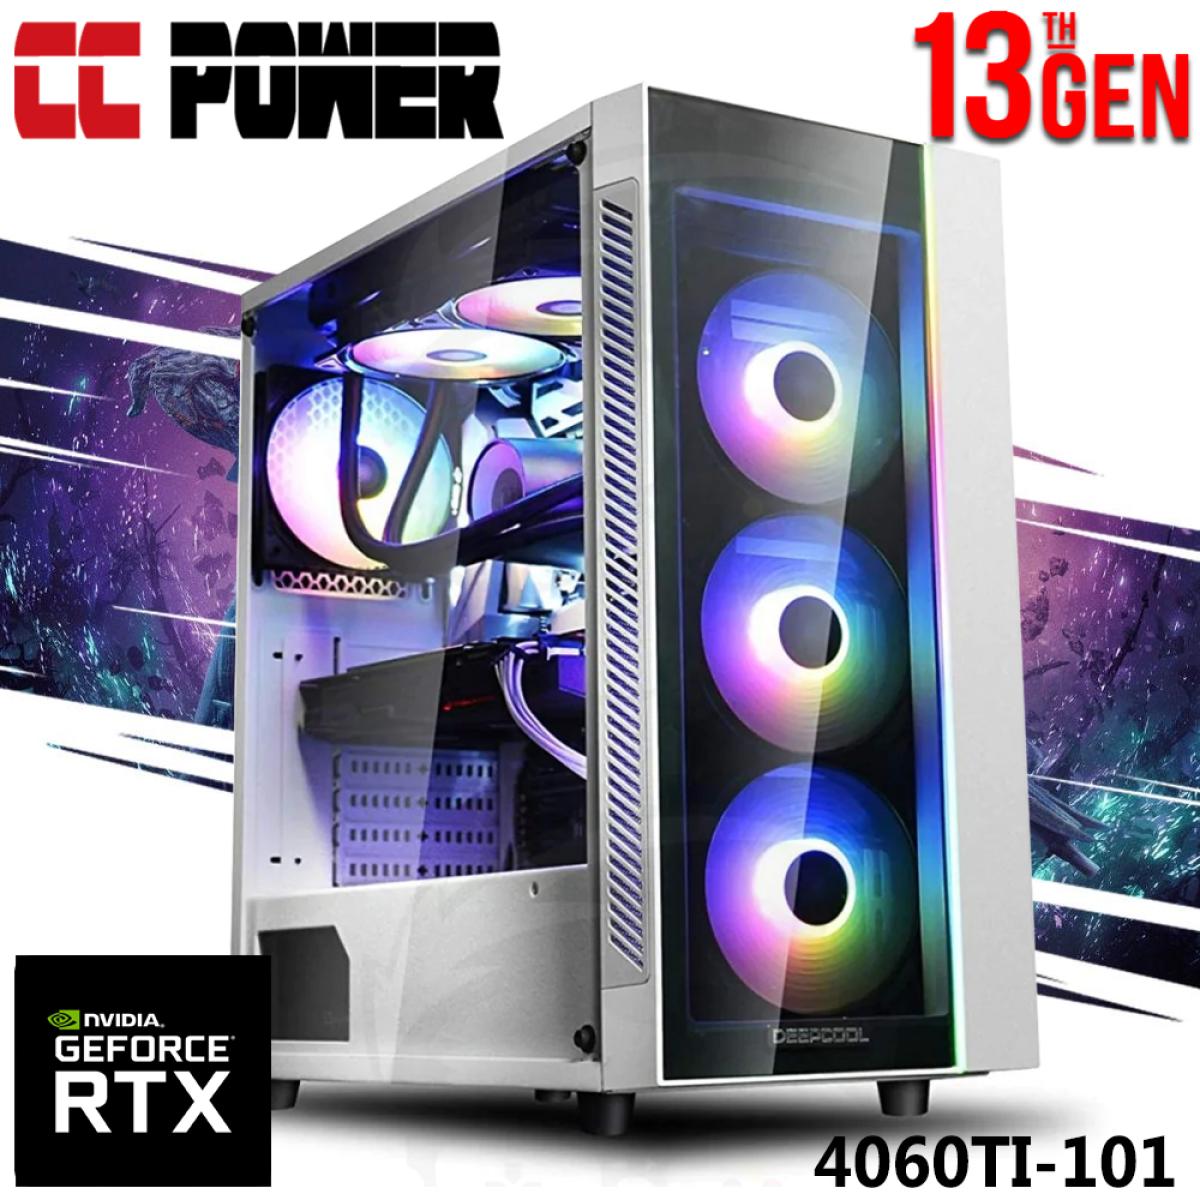 CC Power 4060TI-101 Gaming PC NEW 13Gen Intel Core i5 10-Cores w/ RTX 4060TI 8GB DDR6